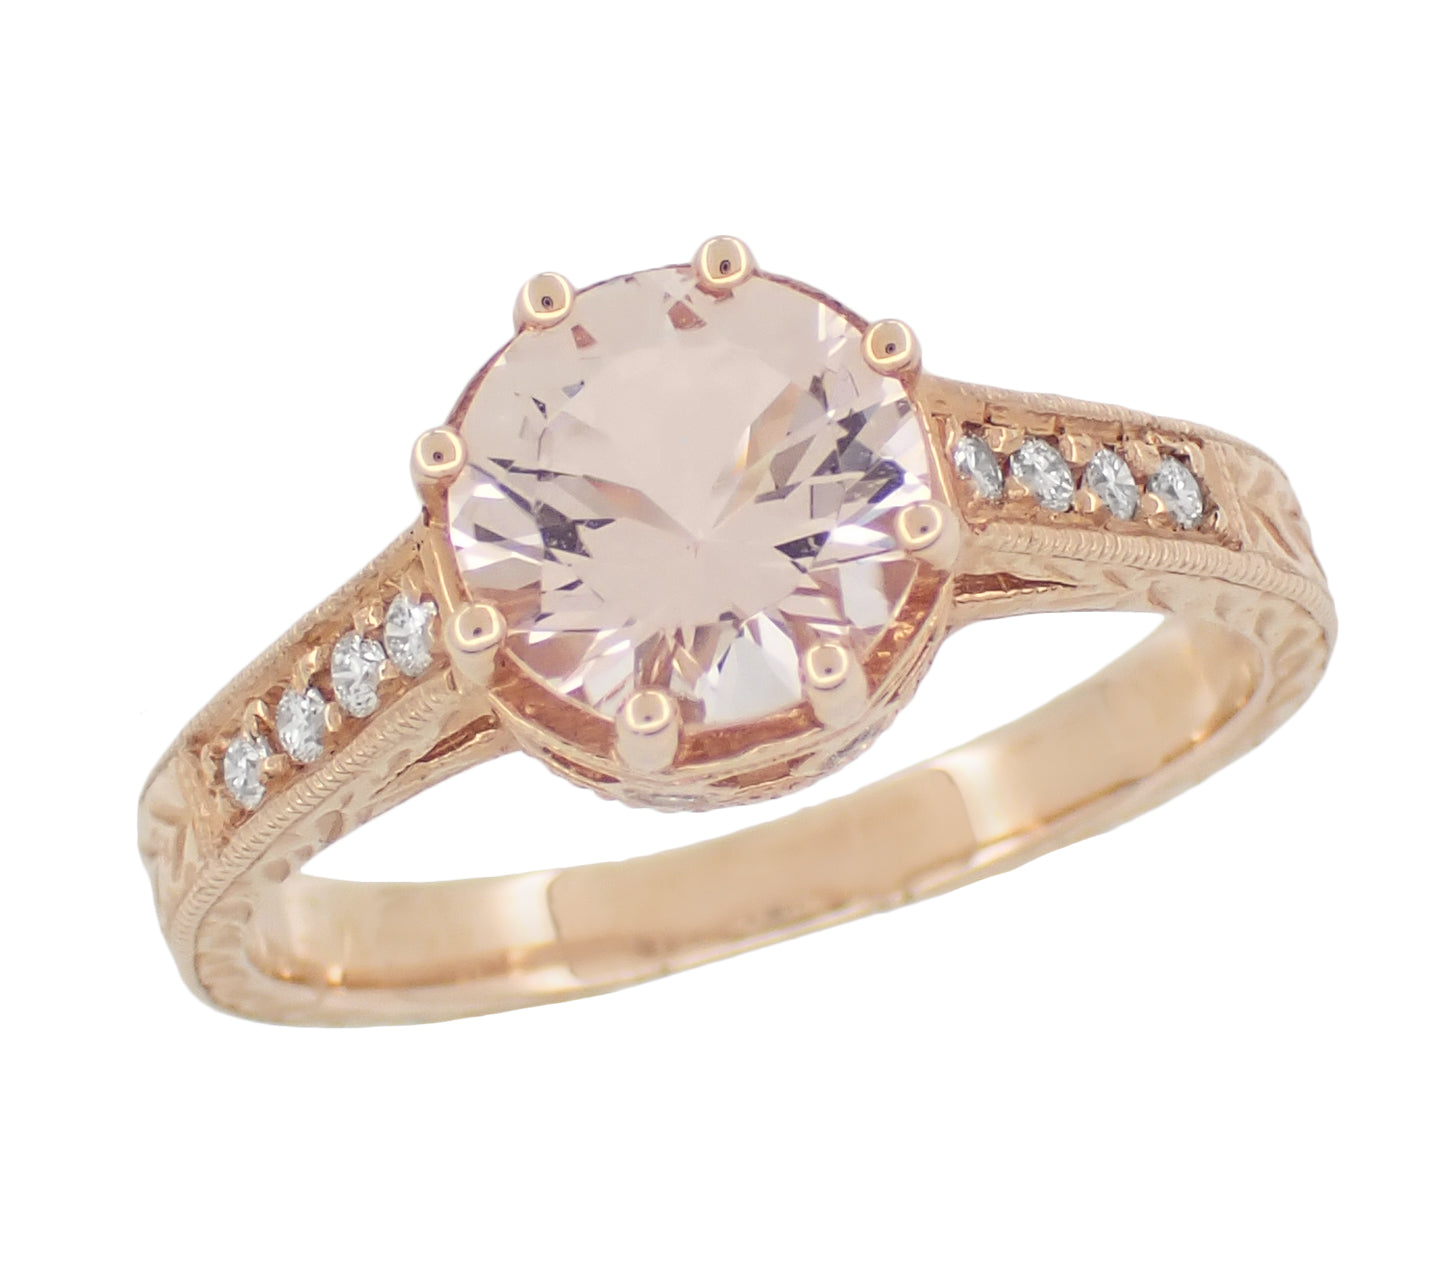 Art Deco Royal Crown Antique Style 1.20 Carat Morganite Engraved Engagement Ring in 14 Karat Rose Gold